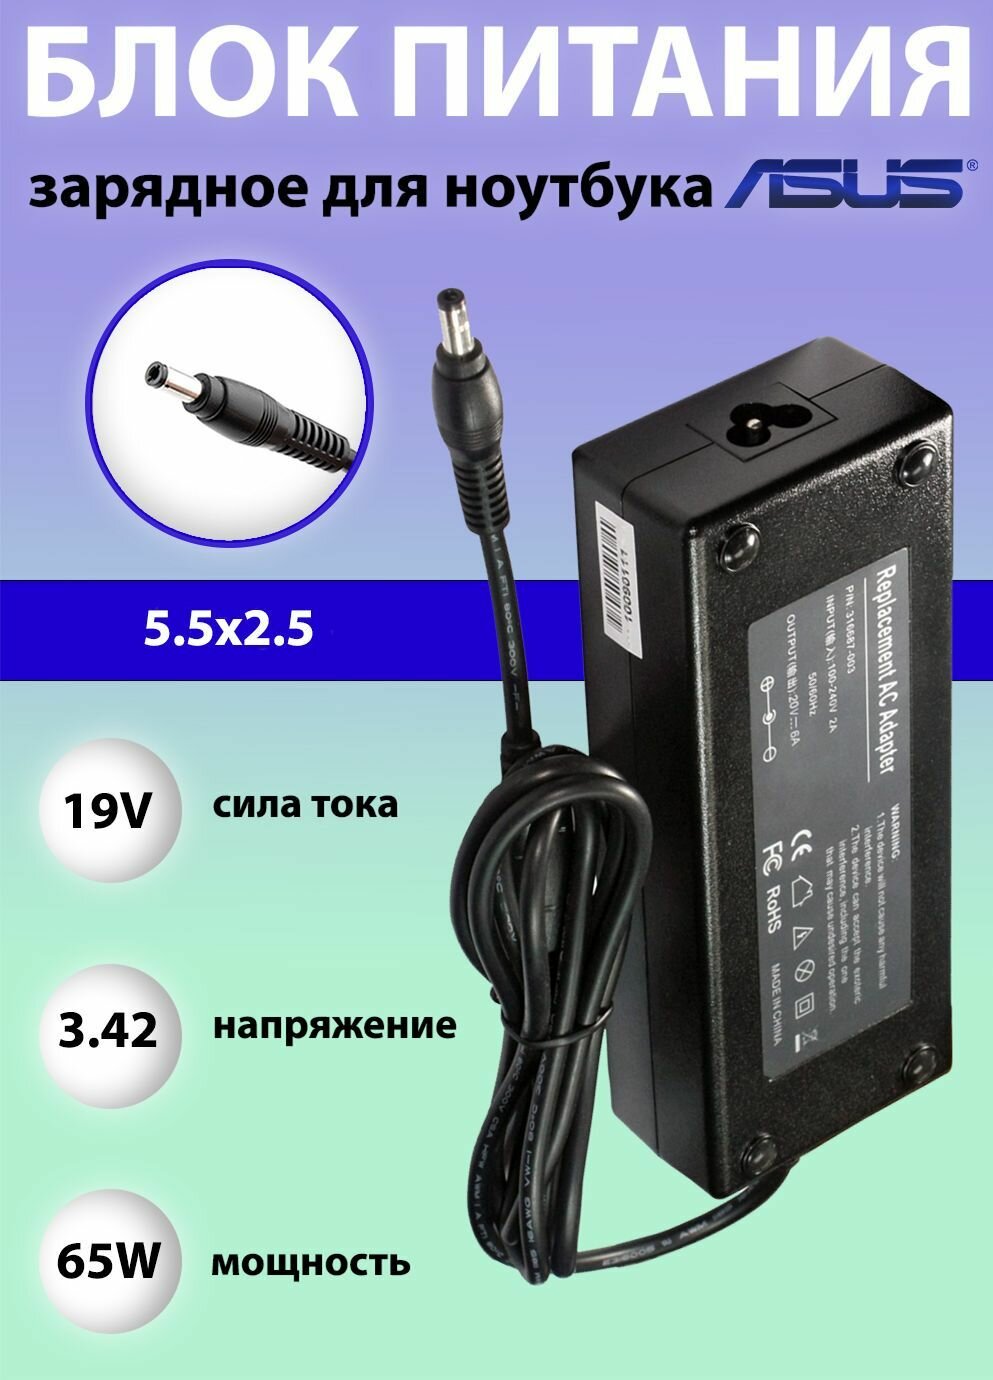 Блок питания (зарядное устройство) для ноутбука Asus 19V, 3.42A, 65W, 5.5х2.5 с кабелем